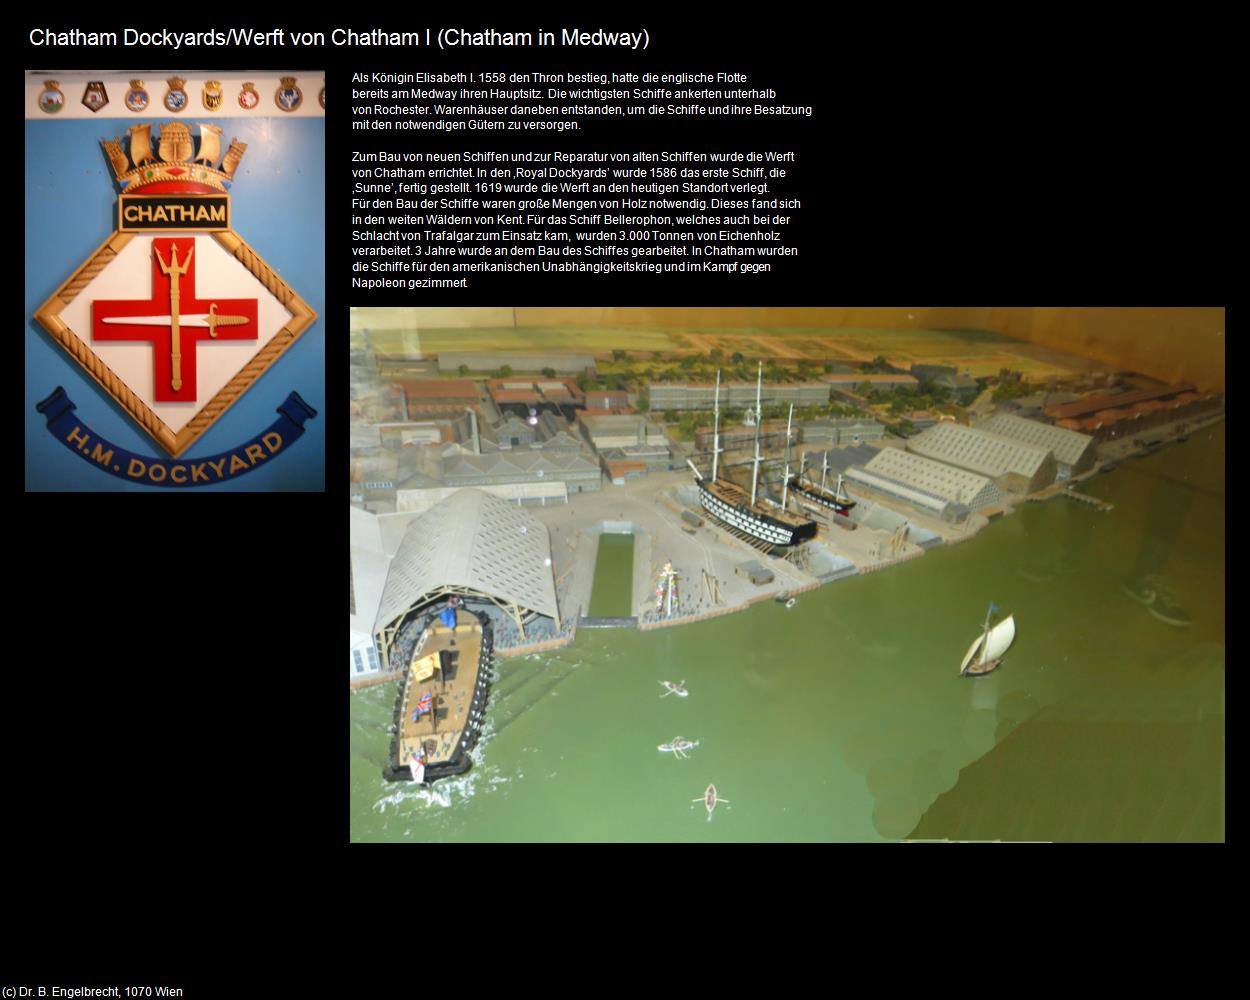 Historic Dockyard/Werft von Chatham I  (Chatham in Medway, England) in Kulturatlas-ENGLAND und WALES